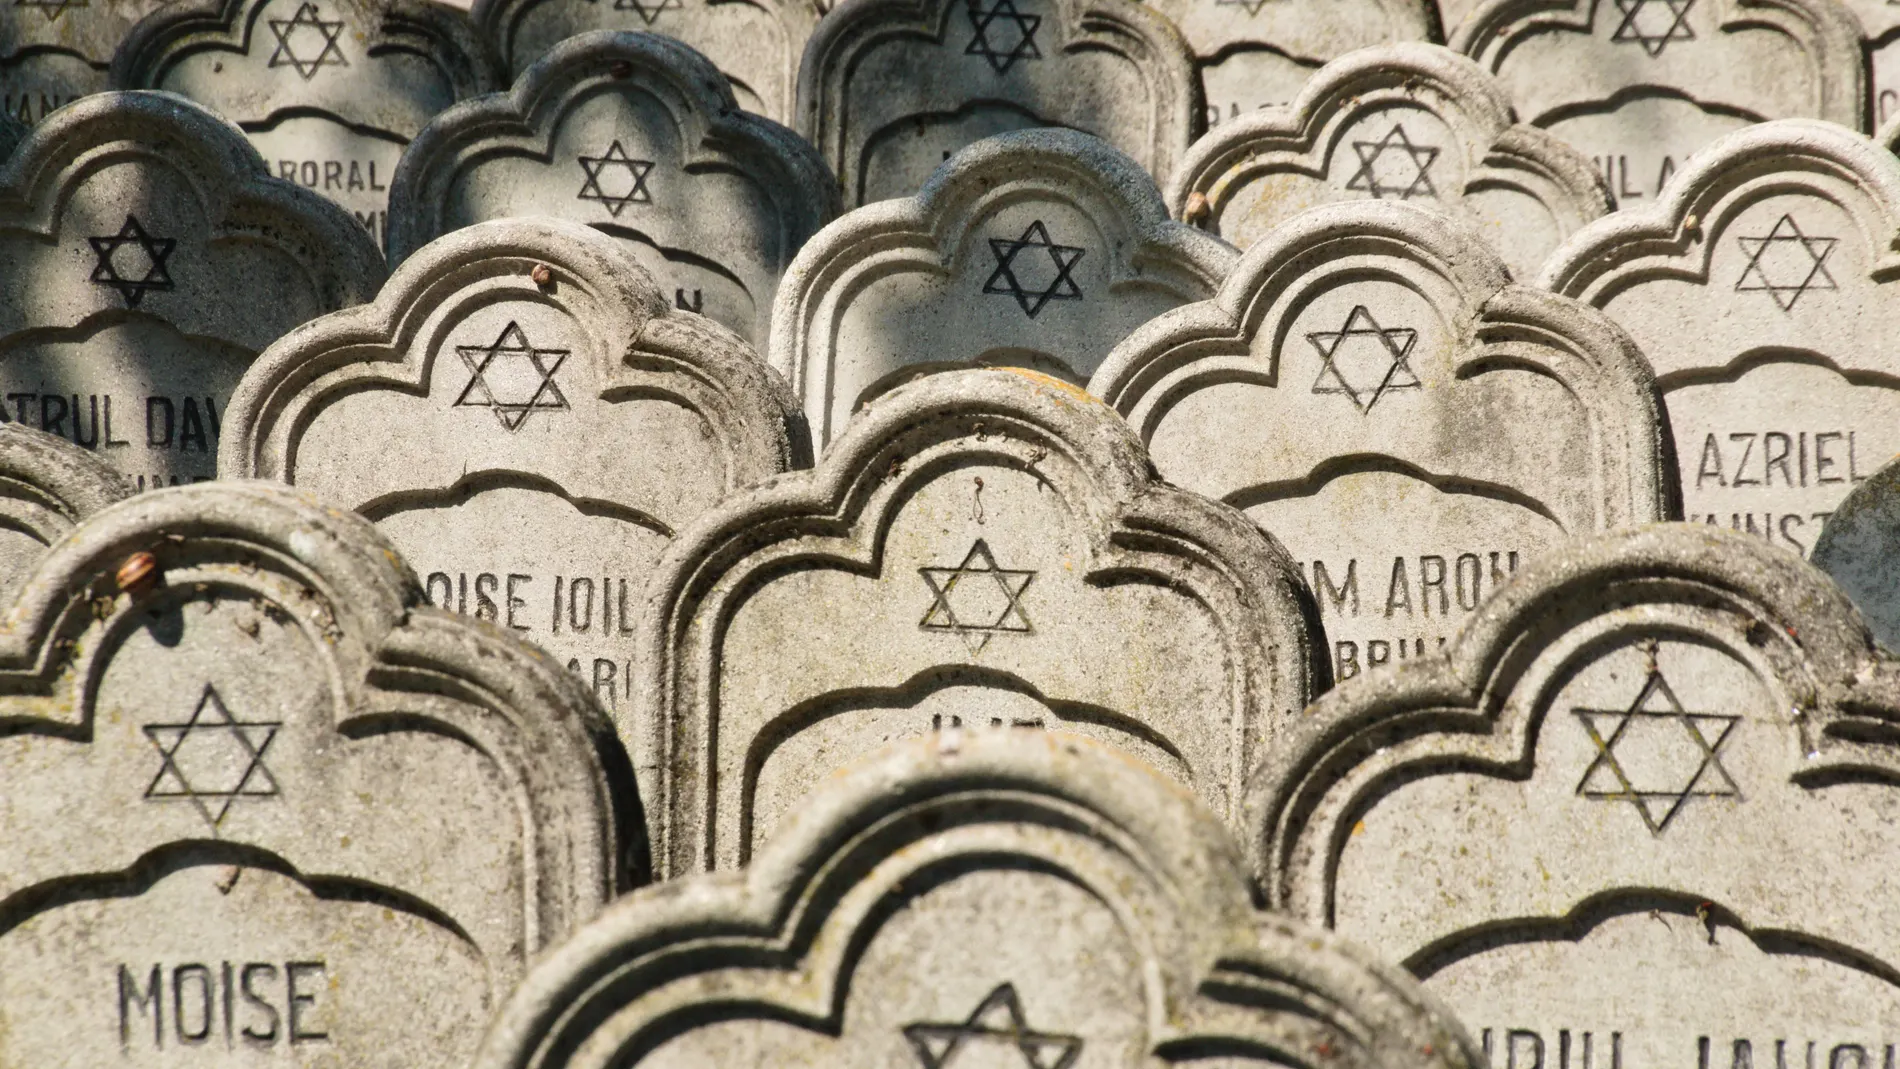 Vista de las lápidas de judíos rumanos que murieron combatiendo por Rumanía en la I Guerra Mundial, en el cementerio judío de Iasi